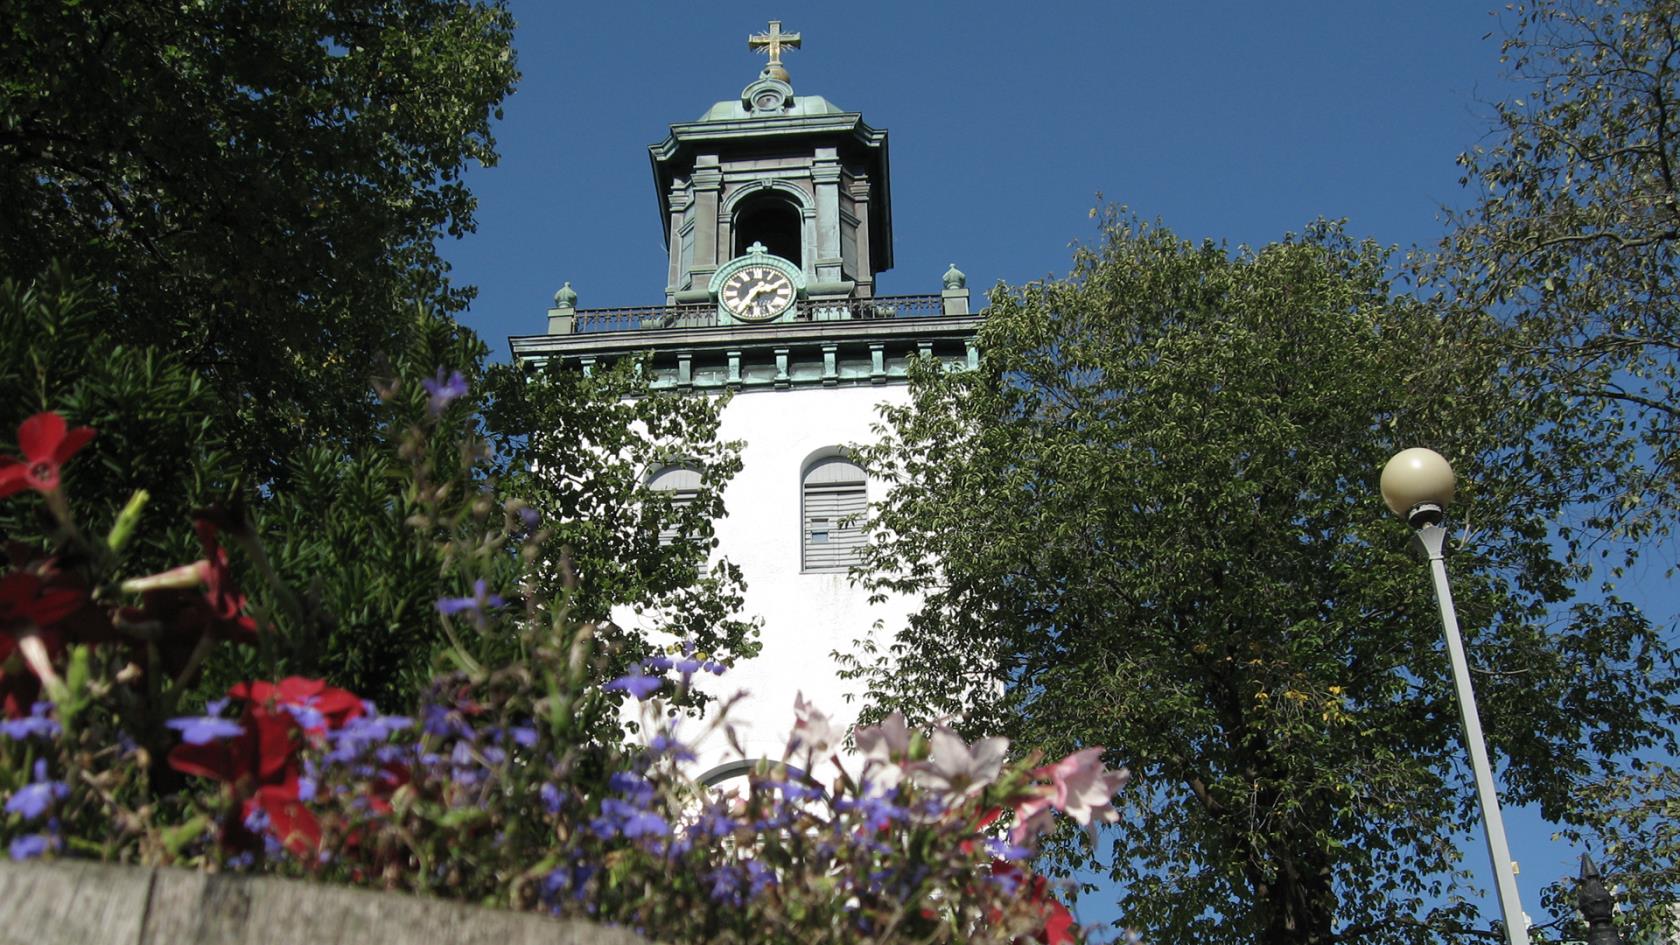 Carl Johans kyrka på sommaren. Framför kyrkan blommar blå och röda blommor.